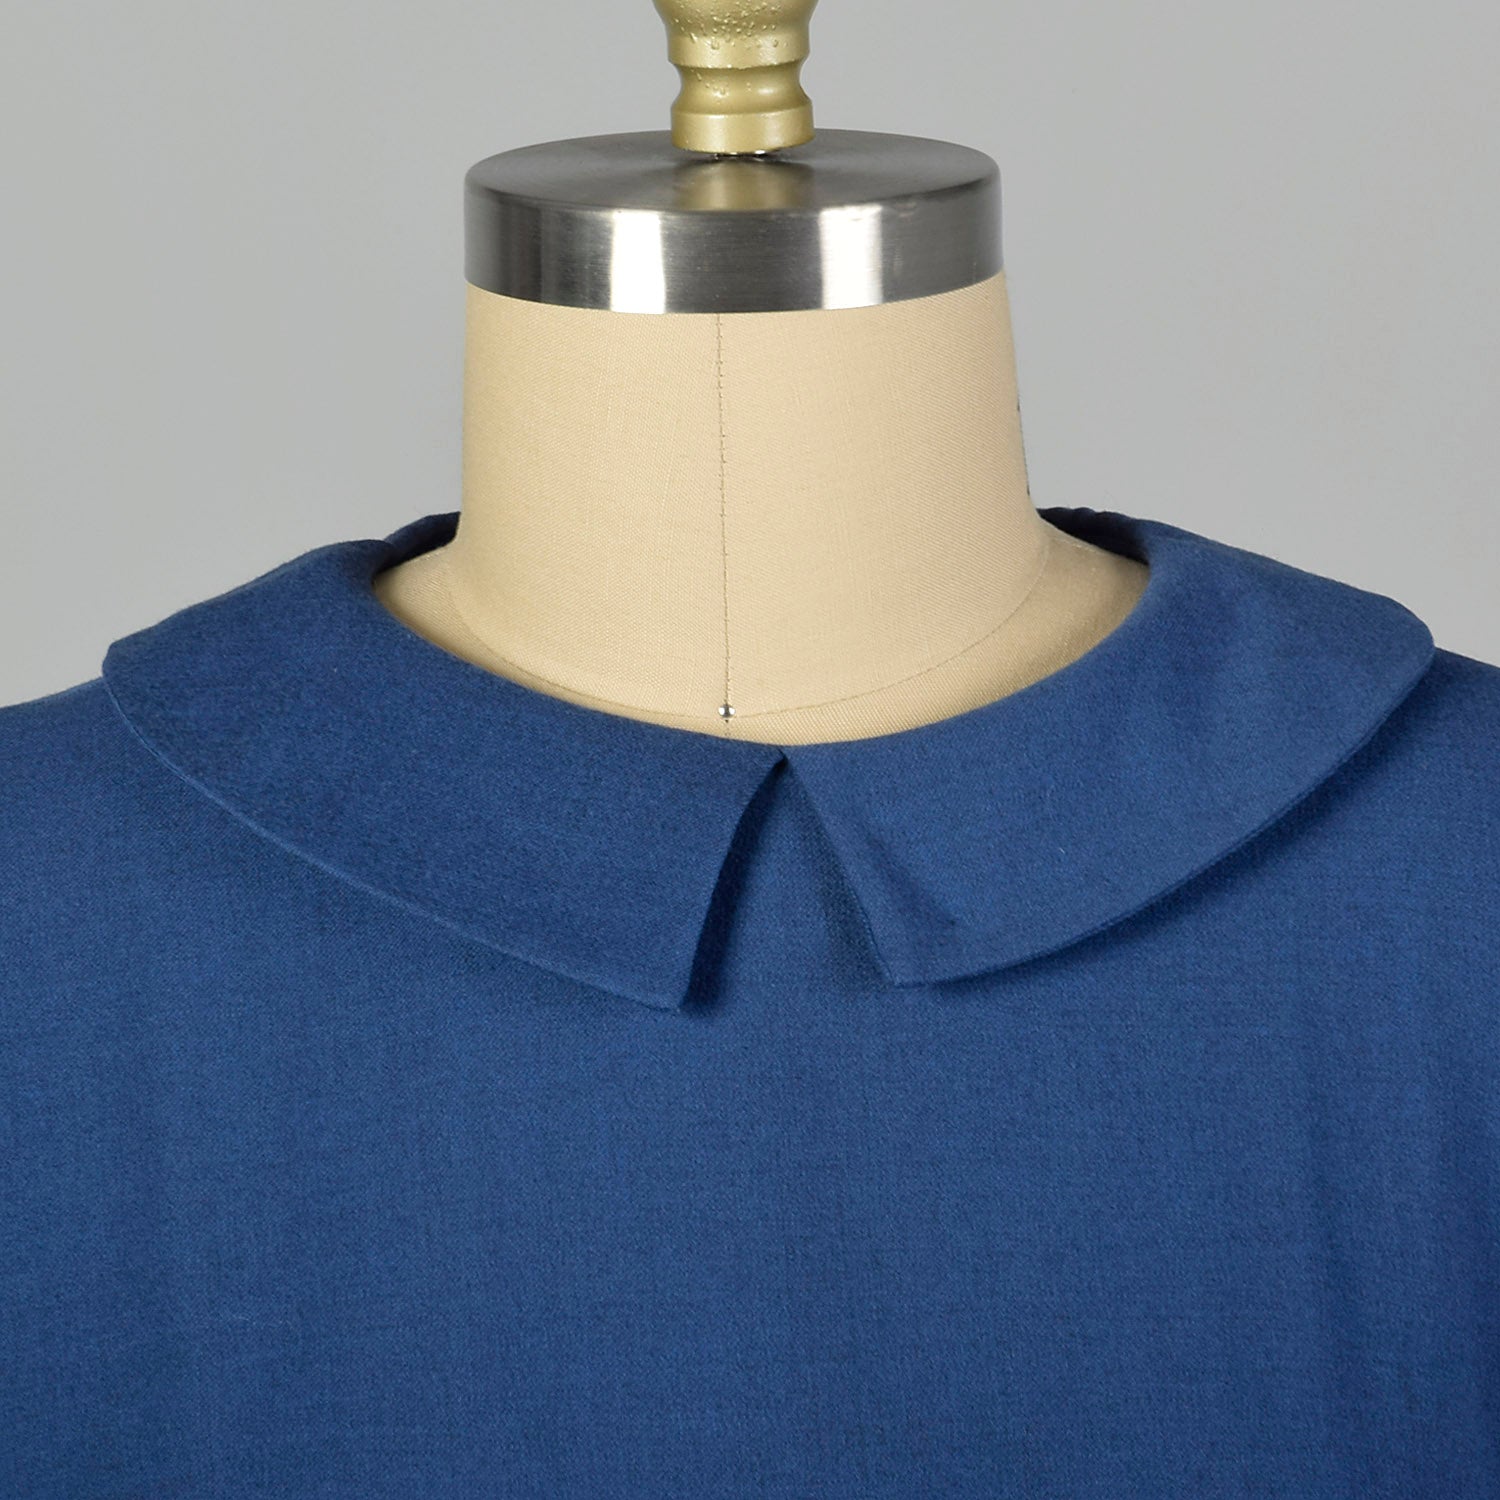 Large 1950s Blue Belted Dress